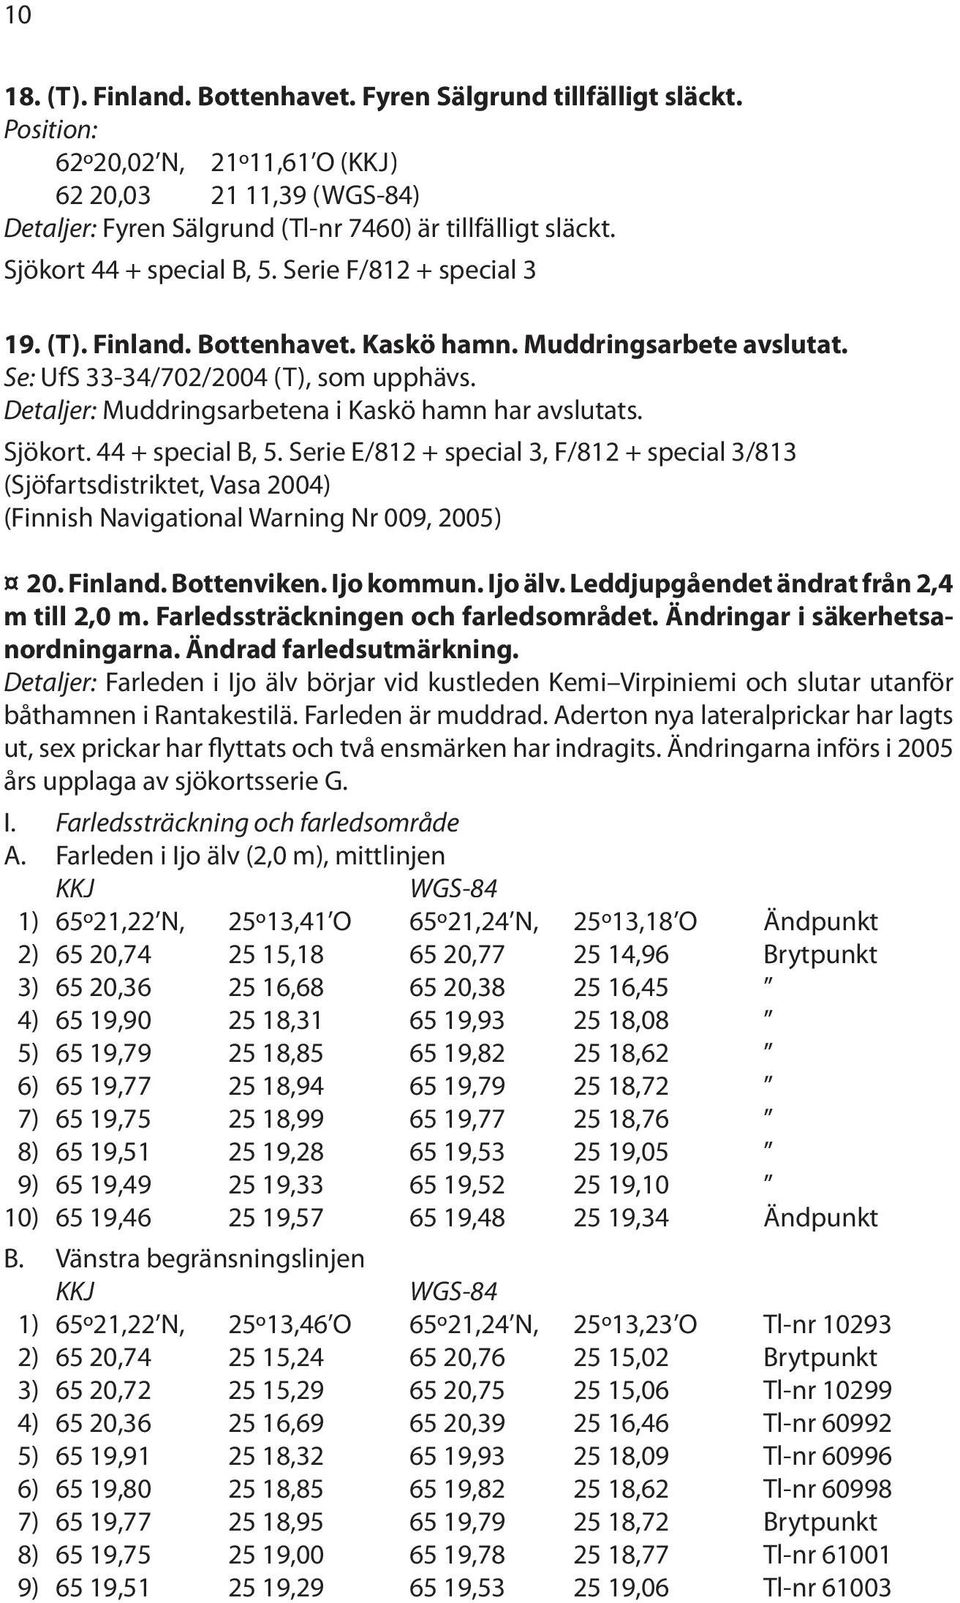 Detaljer: Muddringsarbetena i Kaskö hamn har avslutats. Sjökort. 44 + special B, 5.